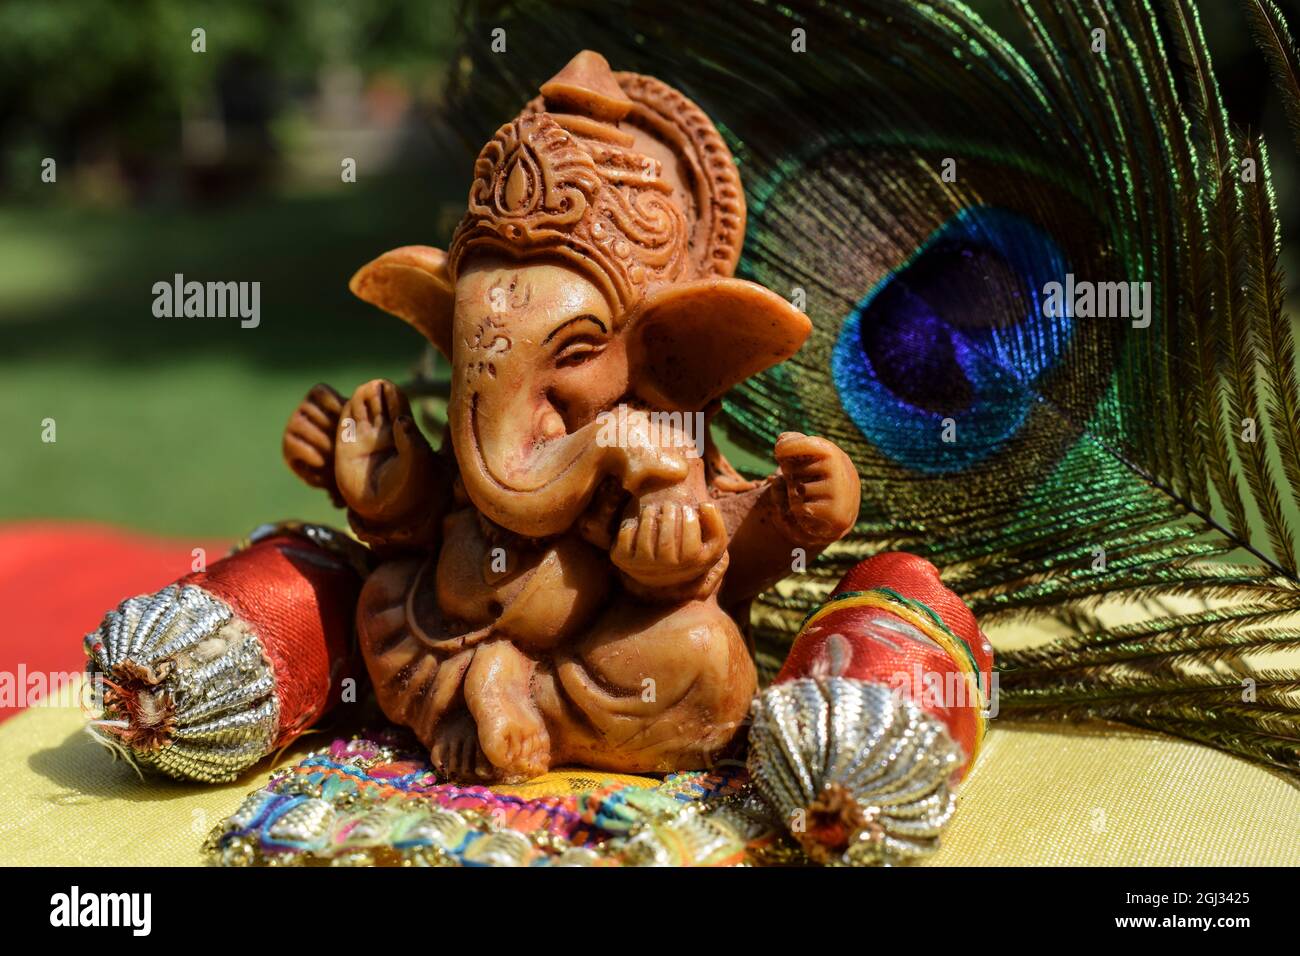 Bel signore Ganesha idol adorato durante il festival di Ganesh chaturthi con piume di pavone sullo sfondo. Foto Stock